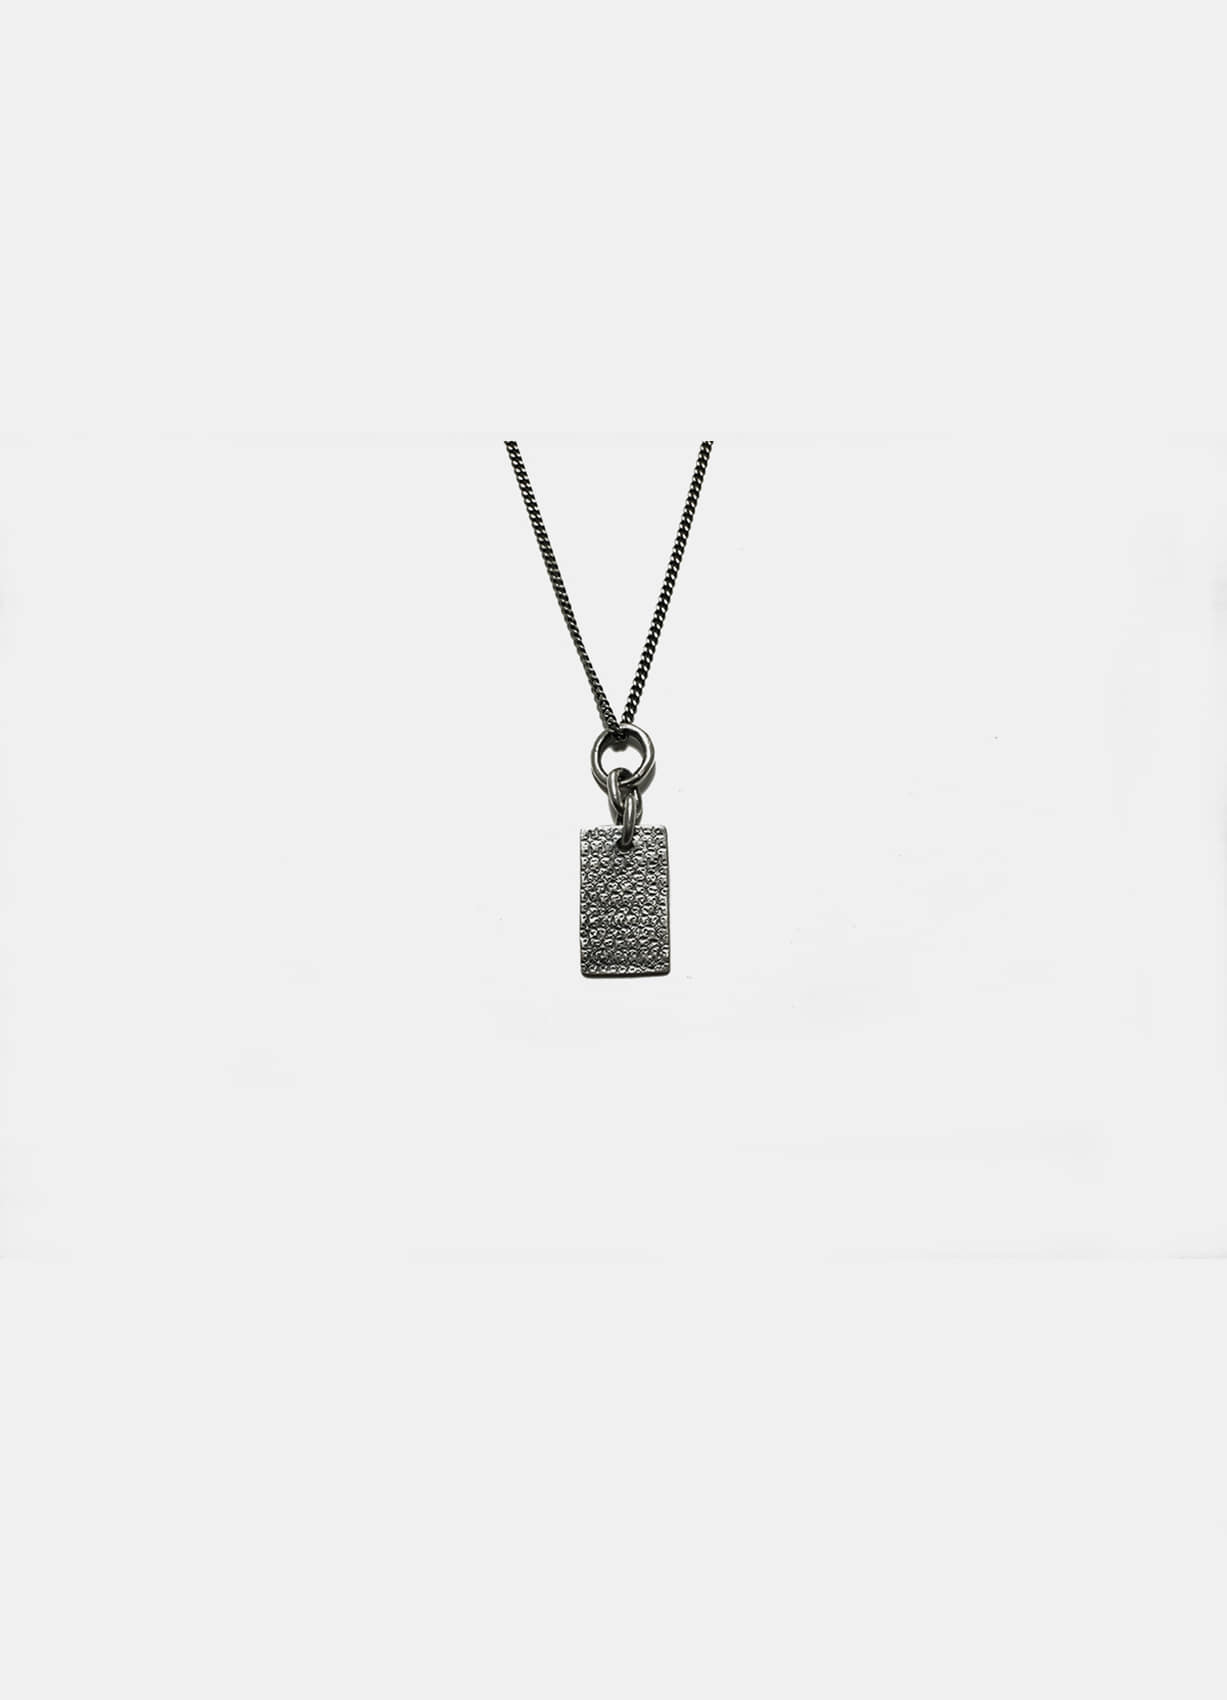 [fluid] pattern silver bar pendant